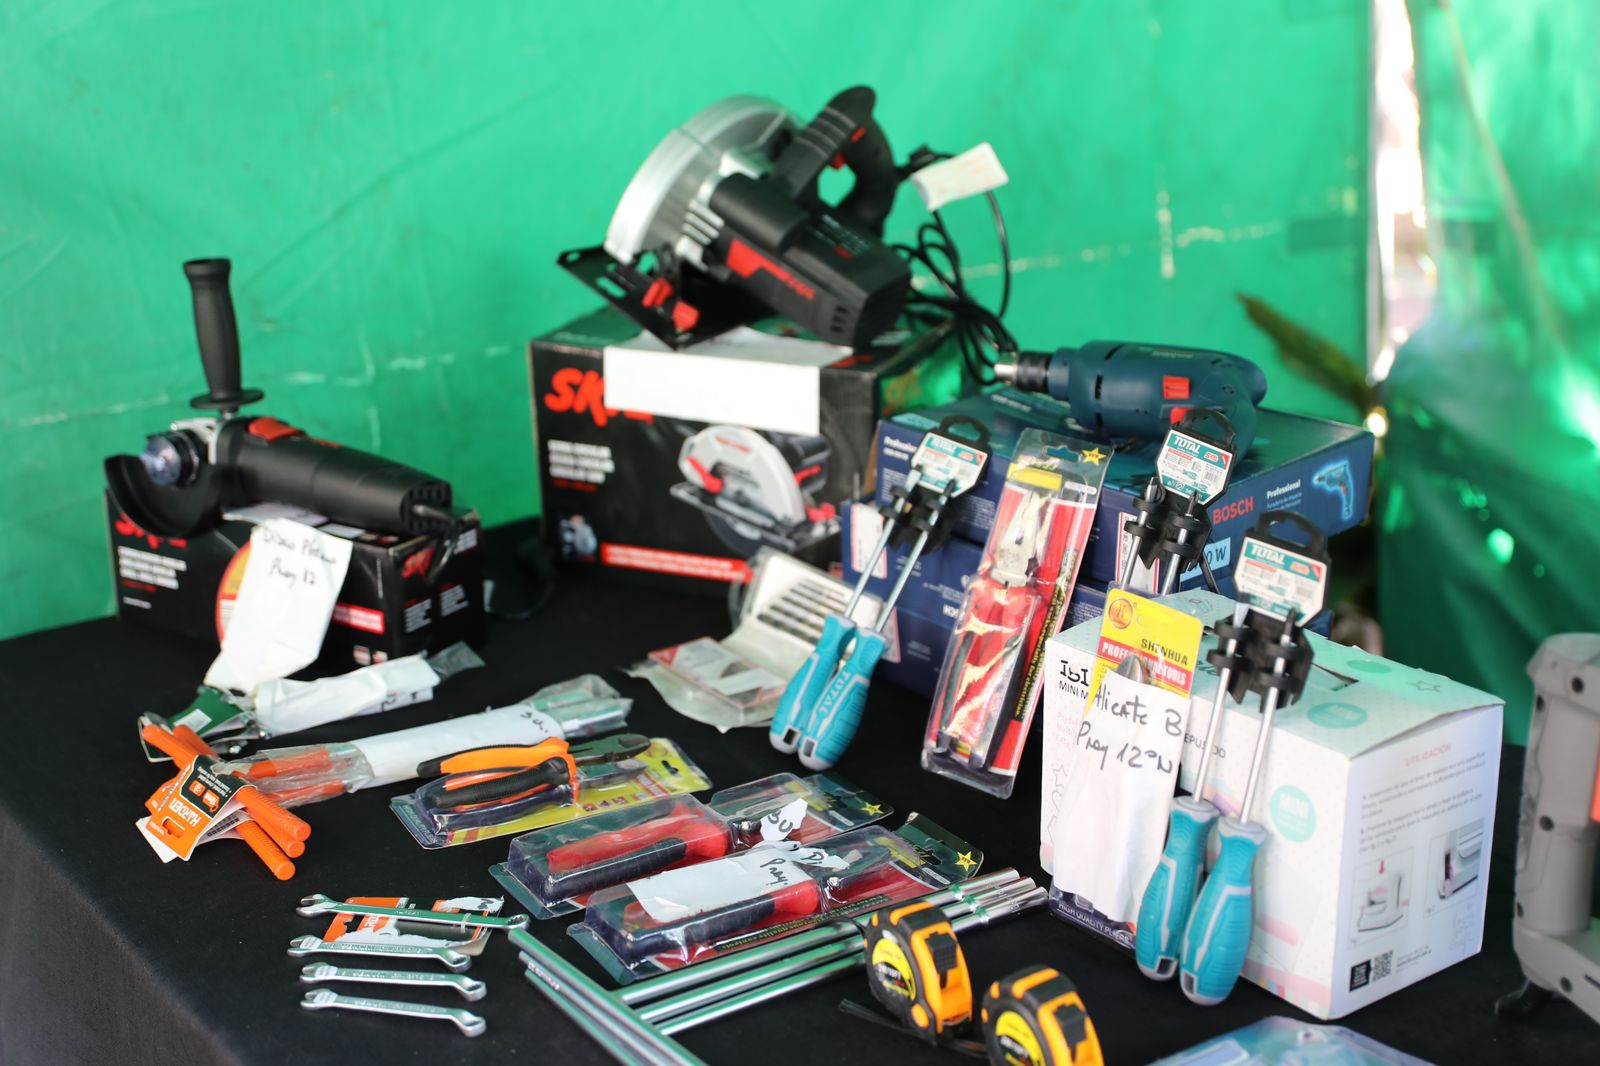 En una mesa se encuentra varias herramientas manuales y eléctricas que fueron entregadas en el marco del programa Banco de Maquinas